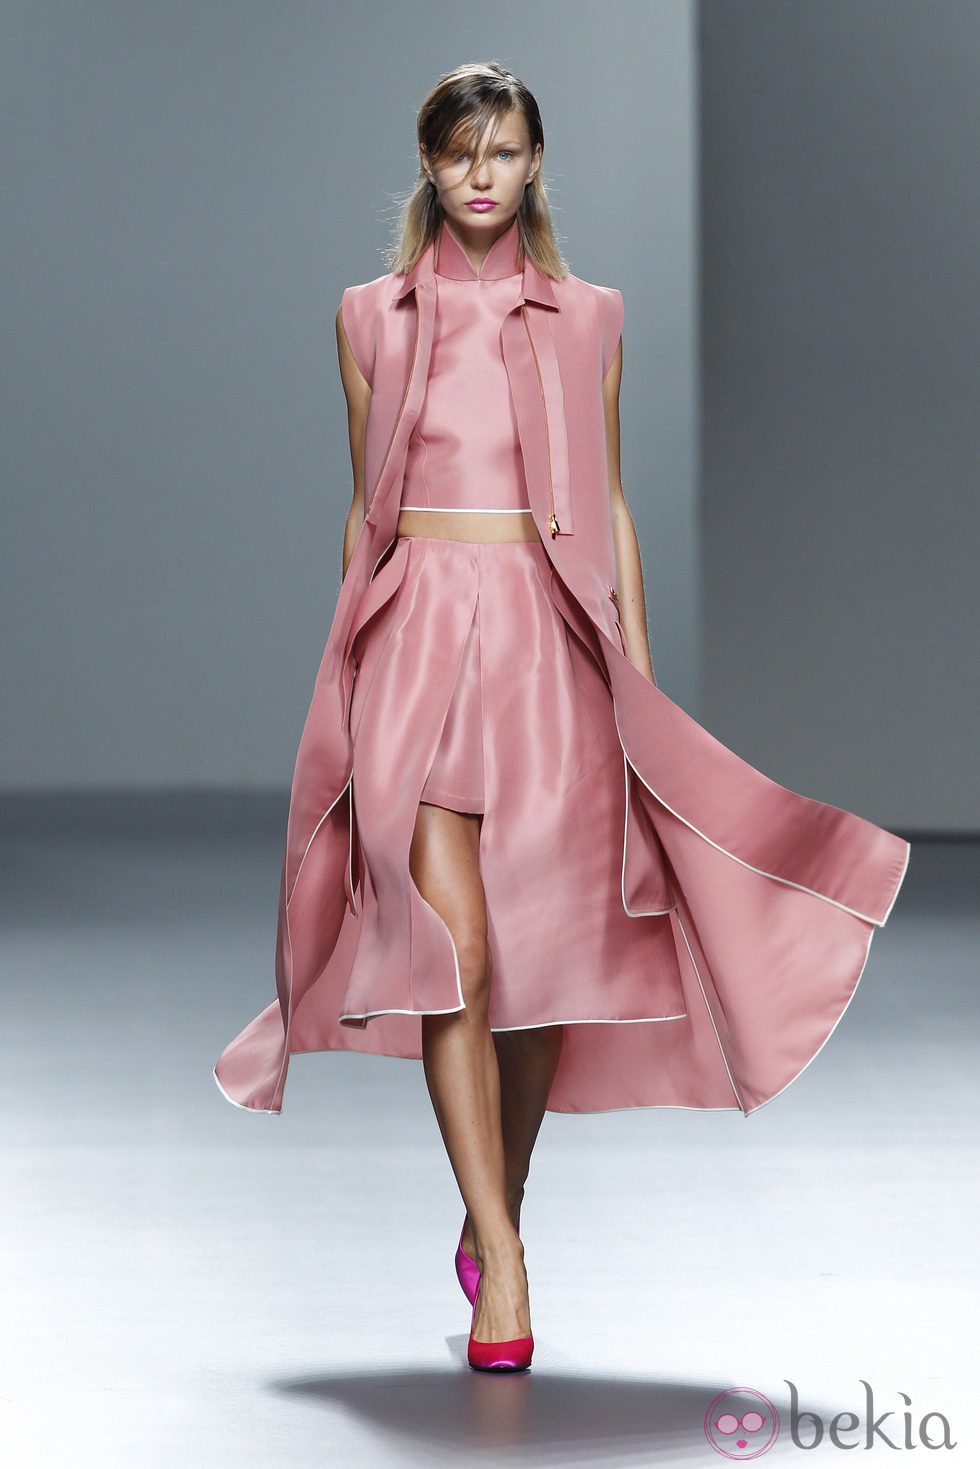 Conjunto rosa de la colección Juan Vidal primavera/verano 2014 en Madrid Fashion Week